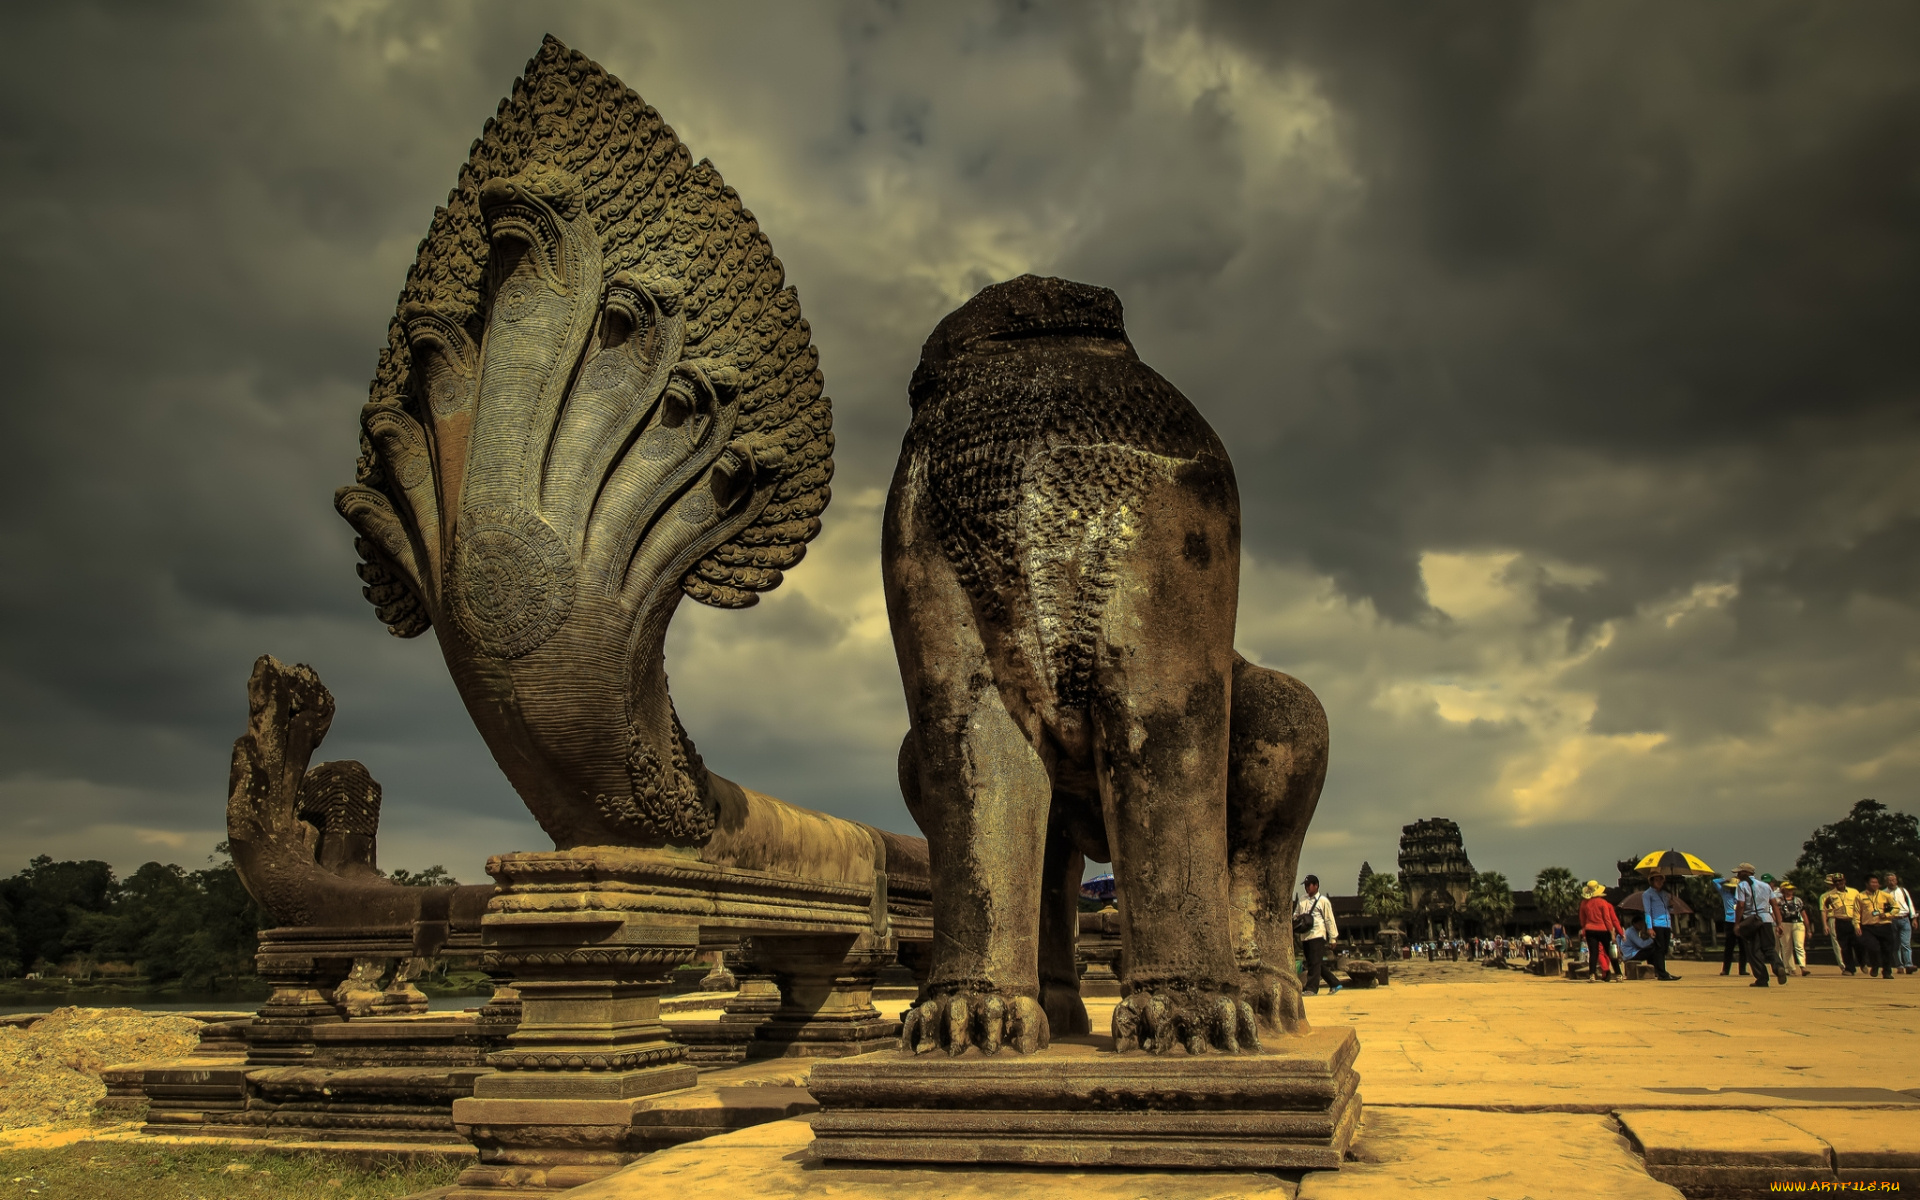 cambodia, города, -, памятники, , скульптуры, , арт-объекты, скульптура, старина, экскурсия, памятник, древность